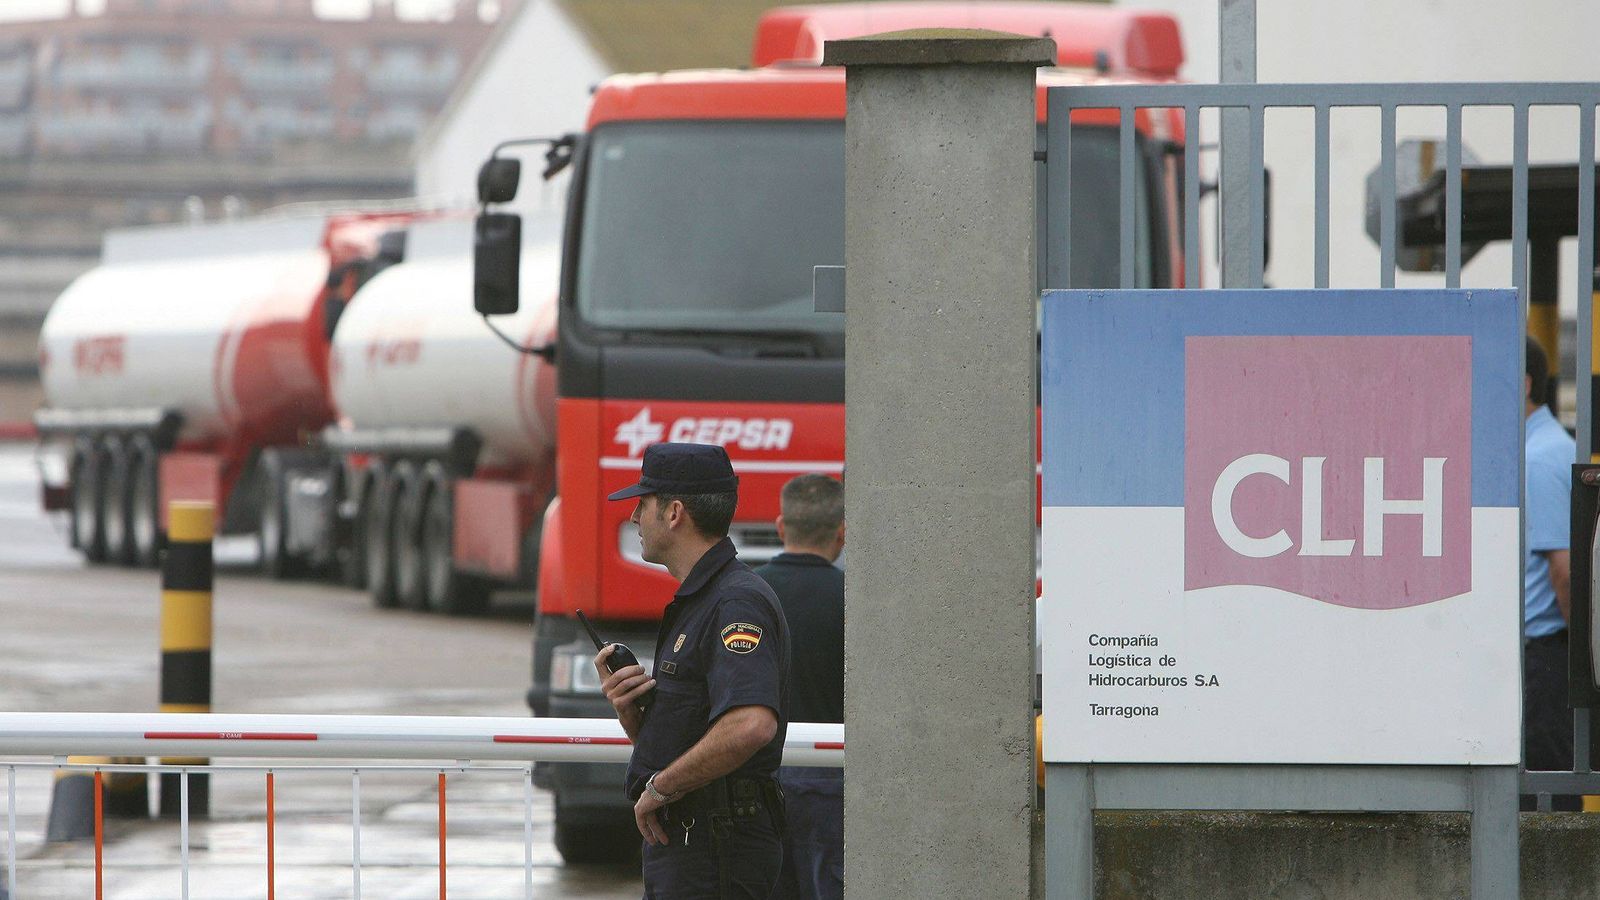 Foto: Miembros de la Policía Nacional controlan los accesos a la Compañía Logística de Hidrocarburos en Tarragona el 10/06/2008. (EFE)